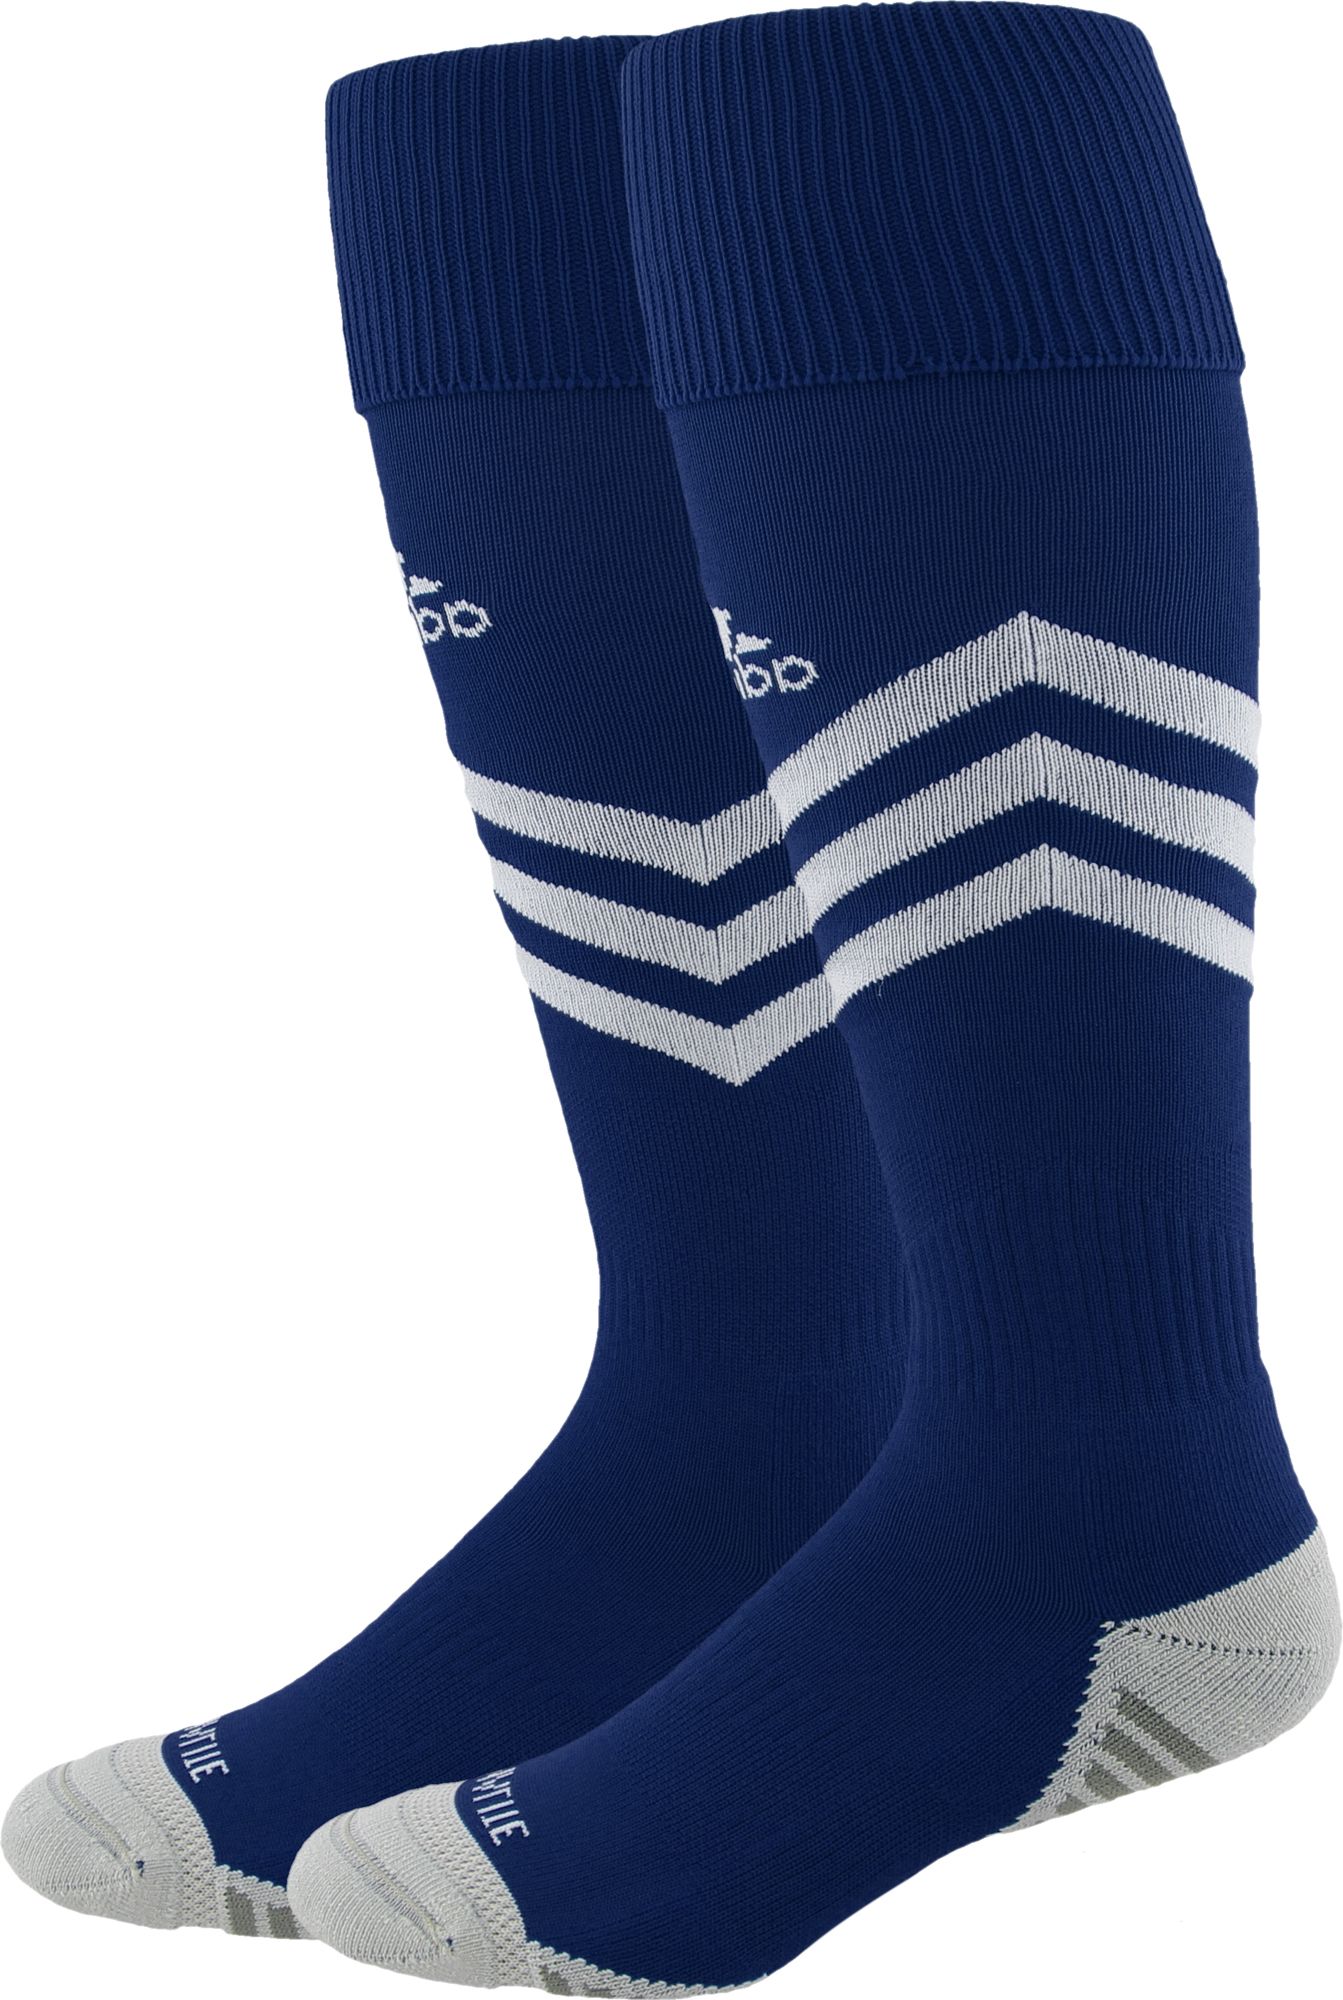 navy blue adidas soccer socks